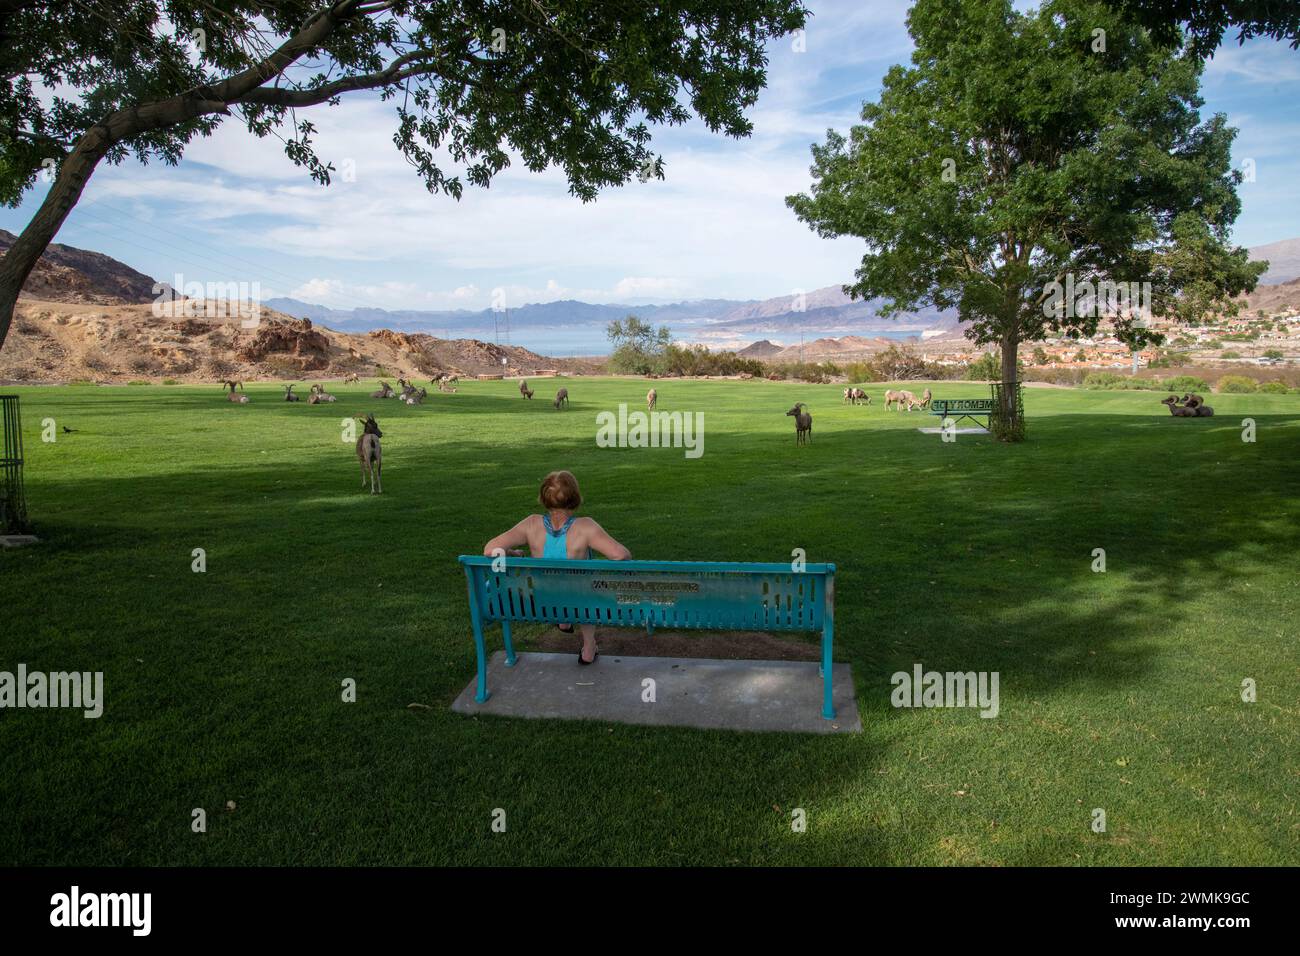 Mujer sentada en el banco del parque observa ovejas del desierto Bighorn (Ovis canadensis nelsoni) en el parque Hemenway, ciudad de Boulder, Nevada con el lago Meade en el dista Foto de stock